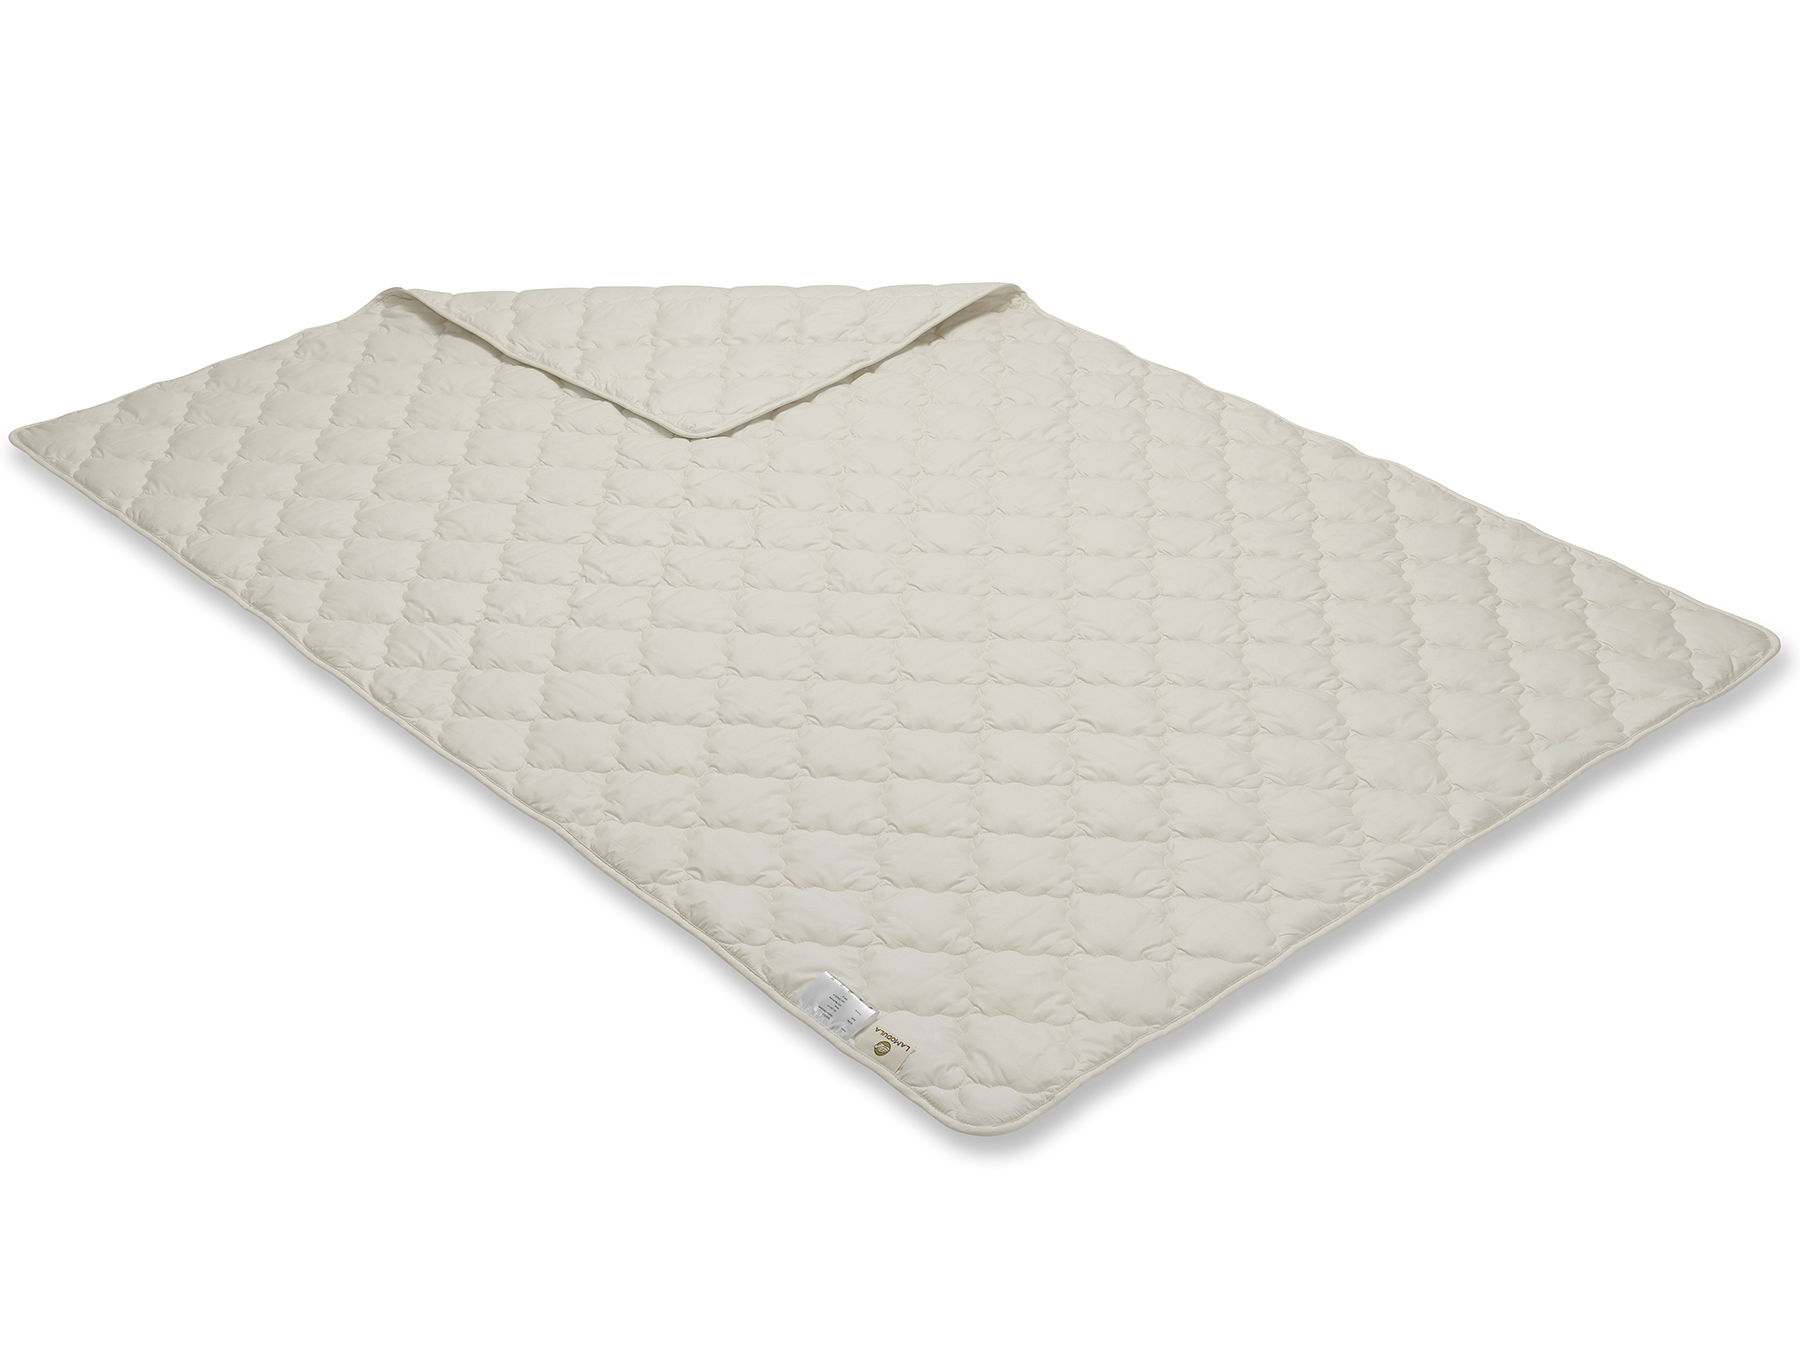 Diese Decke wird mit der Vielnadeltechnik hergestellt - so ergibt sich ein durchgehendes Muster. 